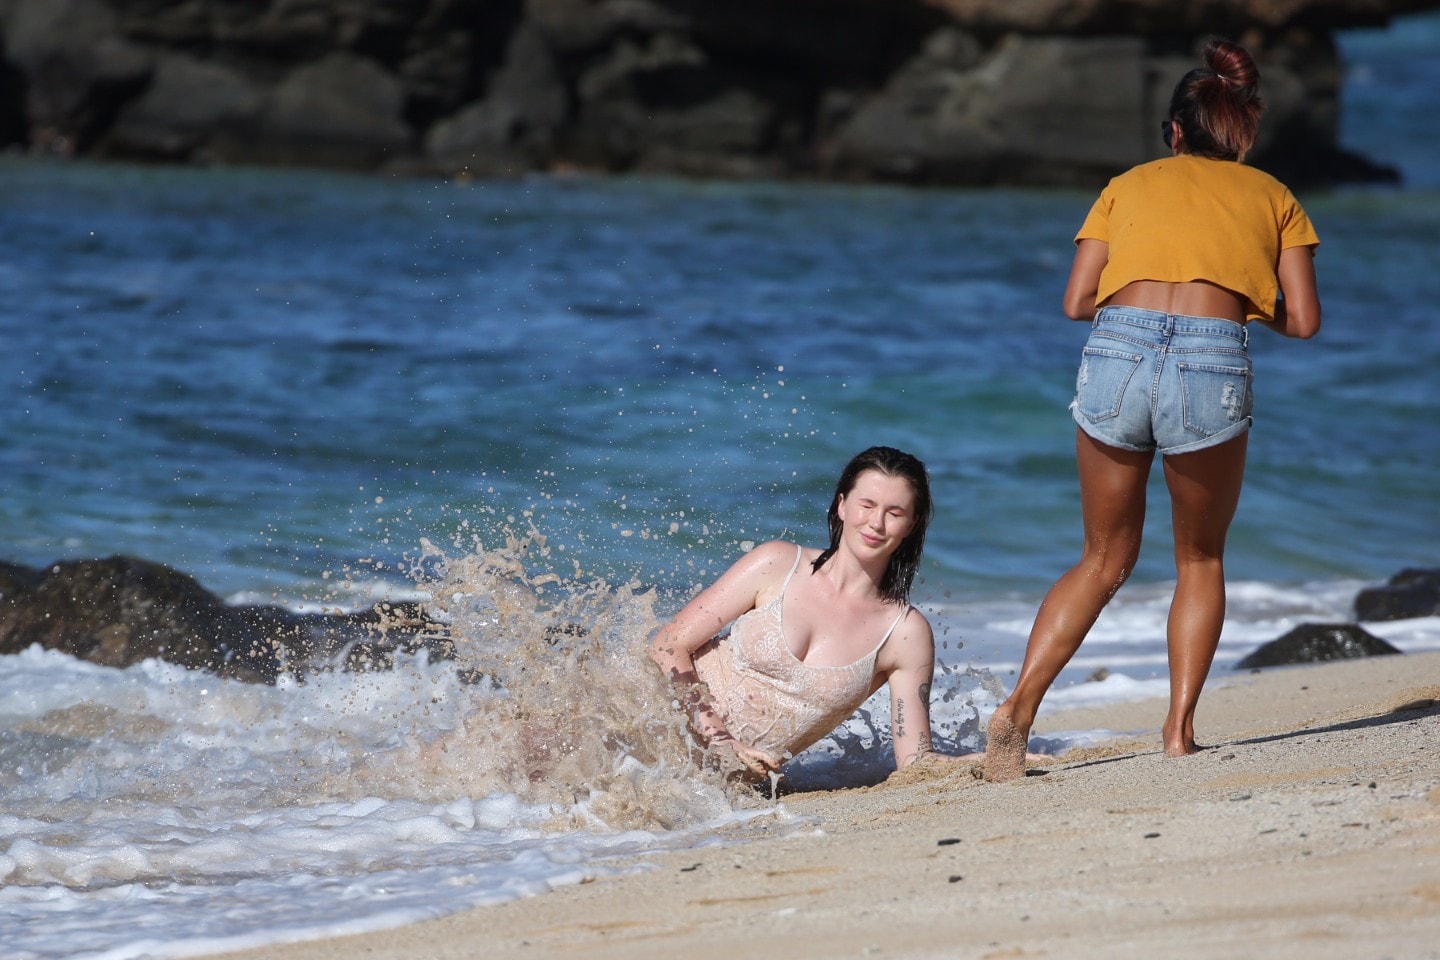 ireland-baldwin-see-through-to-nipples-photo-shoot-in-hawaii-05.jpg